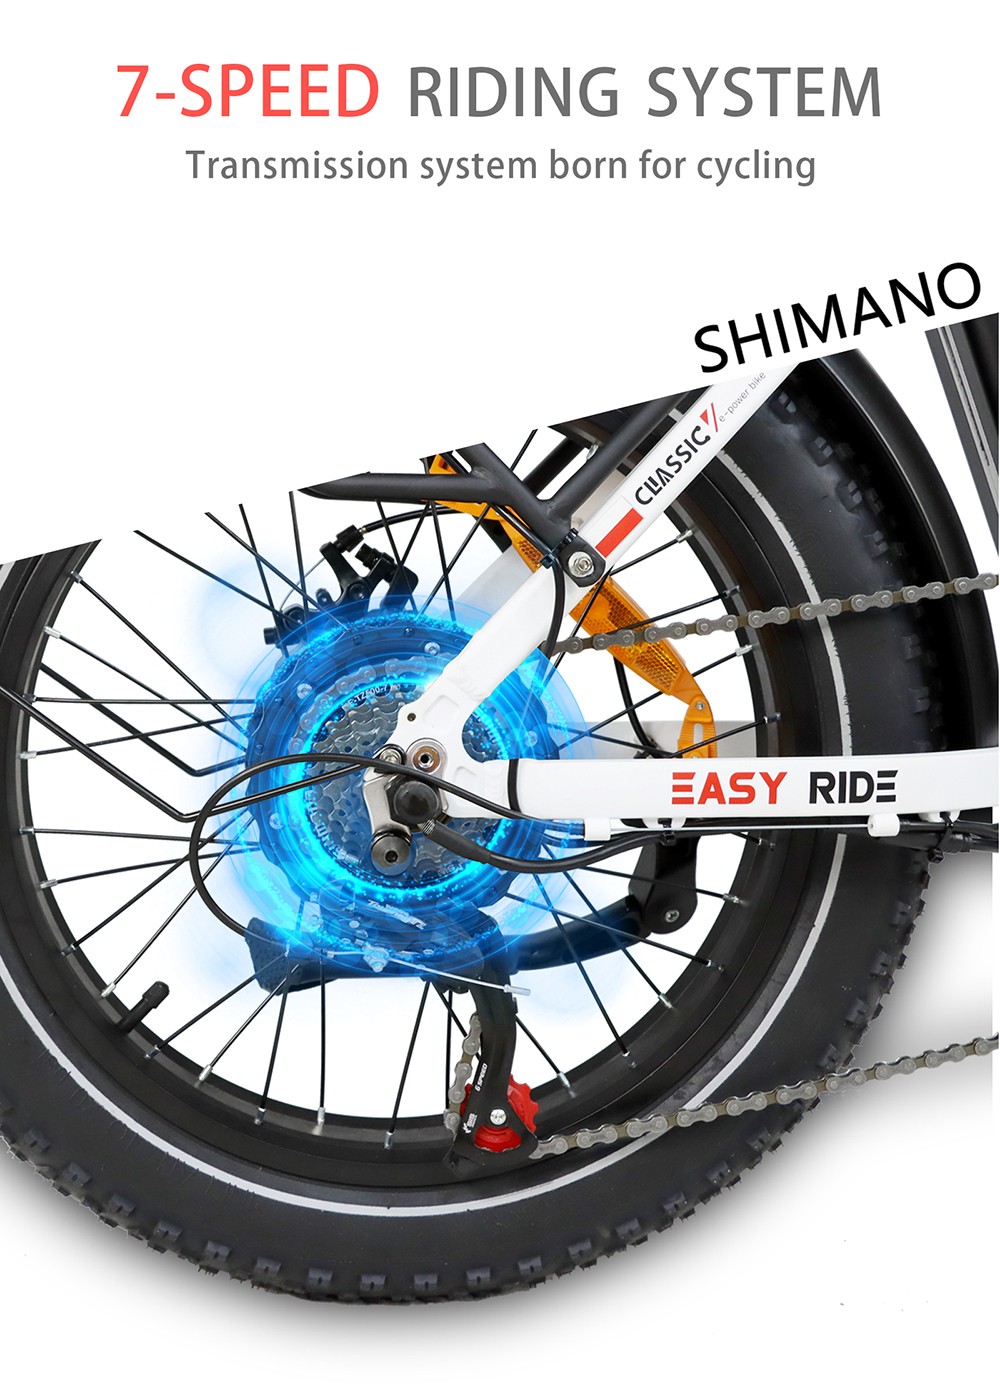 BAOLUJIE DZ2030 elektromos kerékpár, 20 * 4.0 hüvelykes gumiabroncs 500 W motor 48 V 13 Ah cserélhető akkumulátor 40 km/h Max sebesség 35-45 km Hatótáv SHIMANO 7 sebességes - fehér